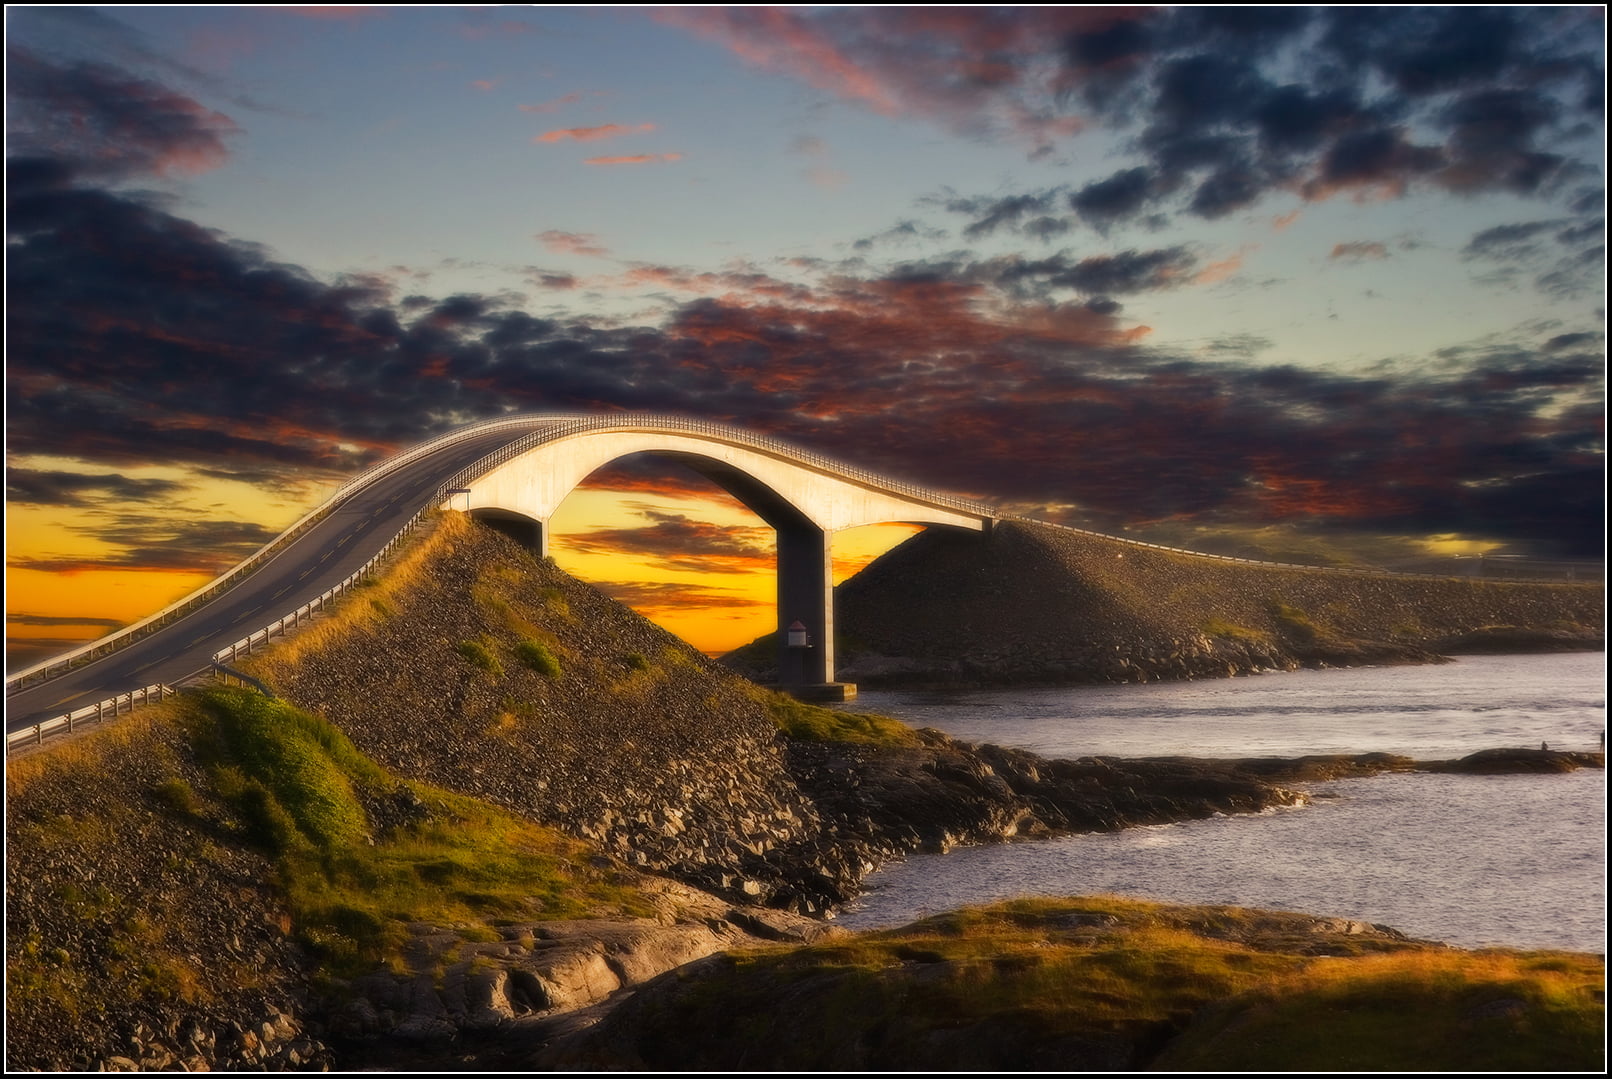 Атлантическая дорога. Мост Storseisundet, Норвегия. Storseisundet Bridge в Норвегии. Сторсезандетский мост (Storseisundet Bridge), Норвегия. Атлантик роуд в Норвегии.